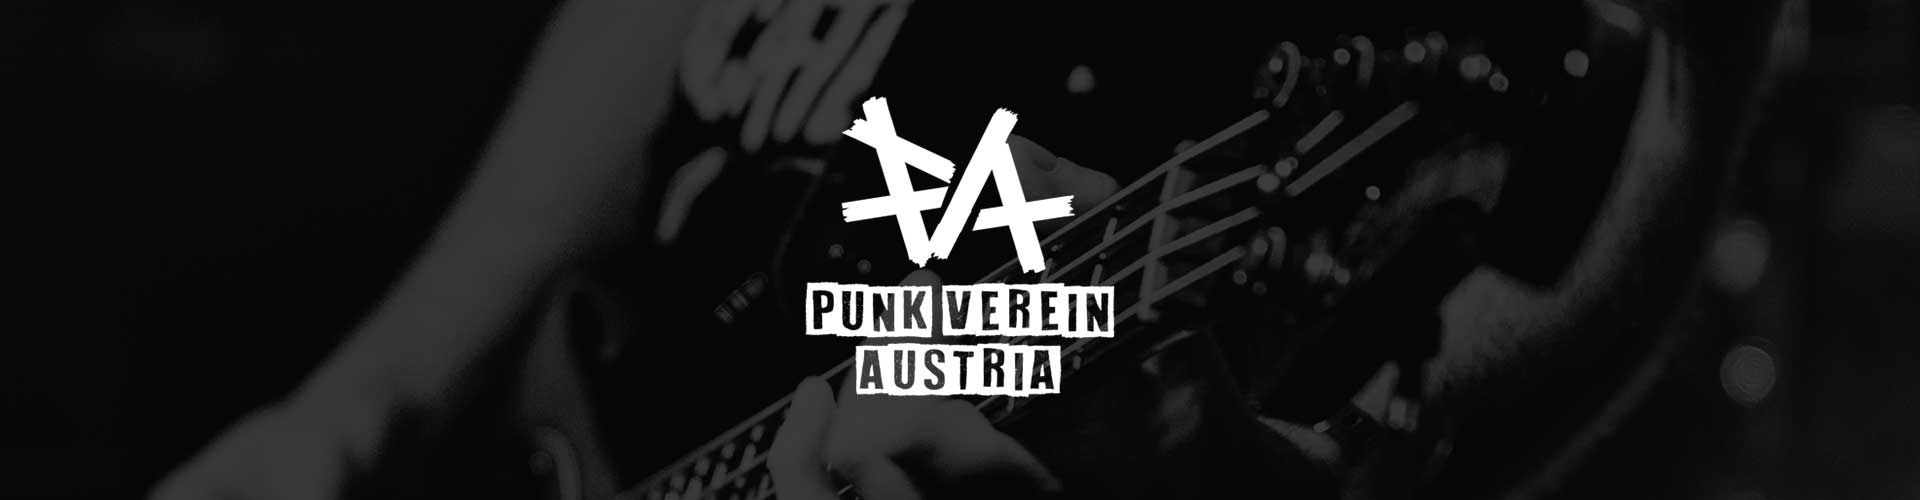 punk verein austria bringticket